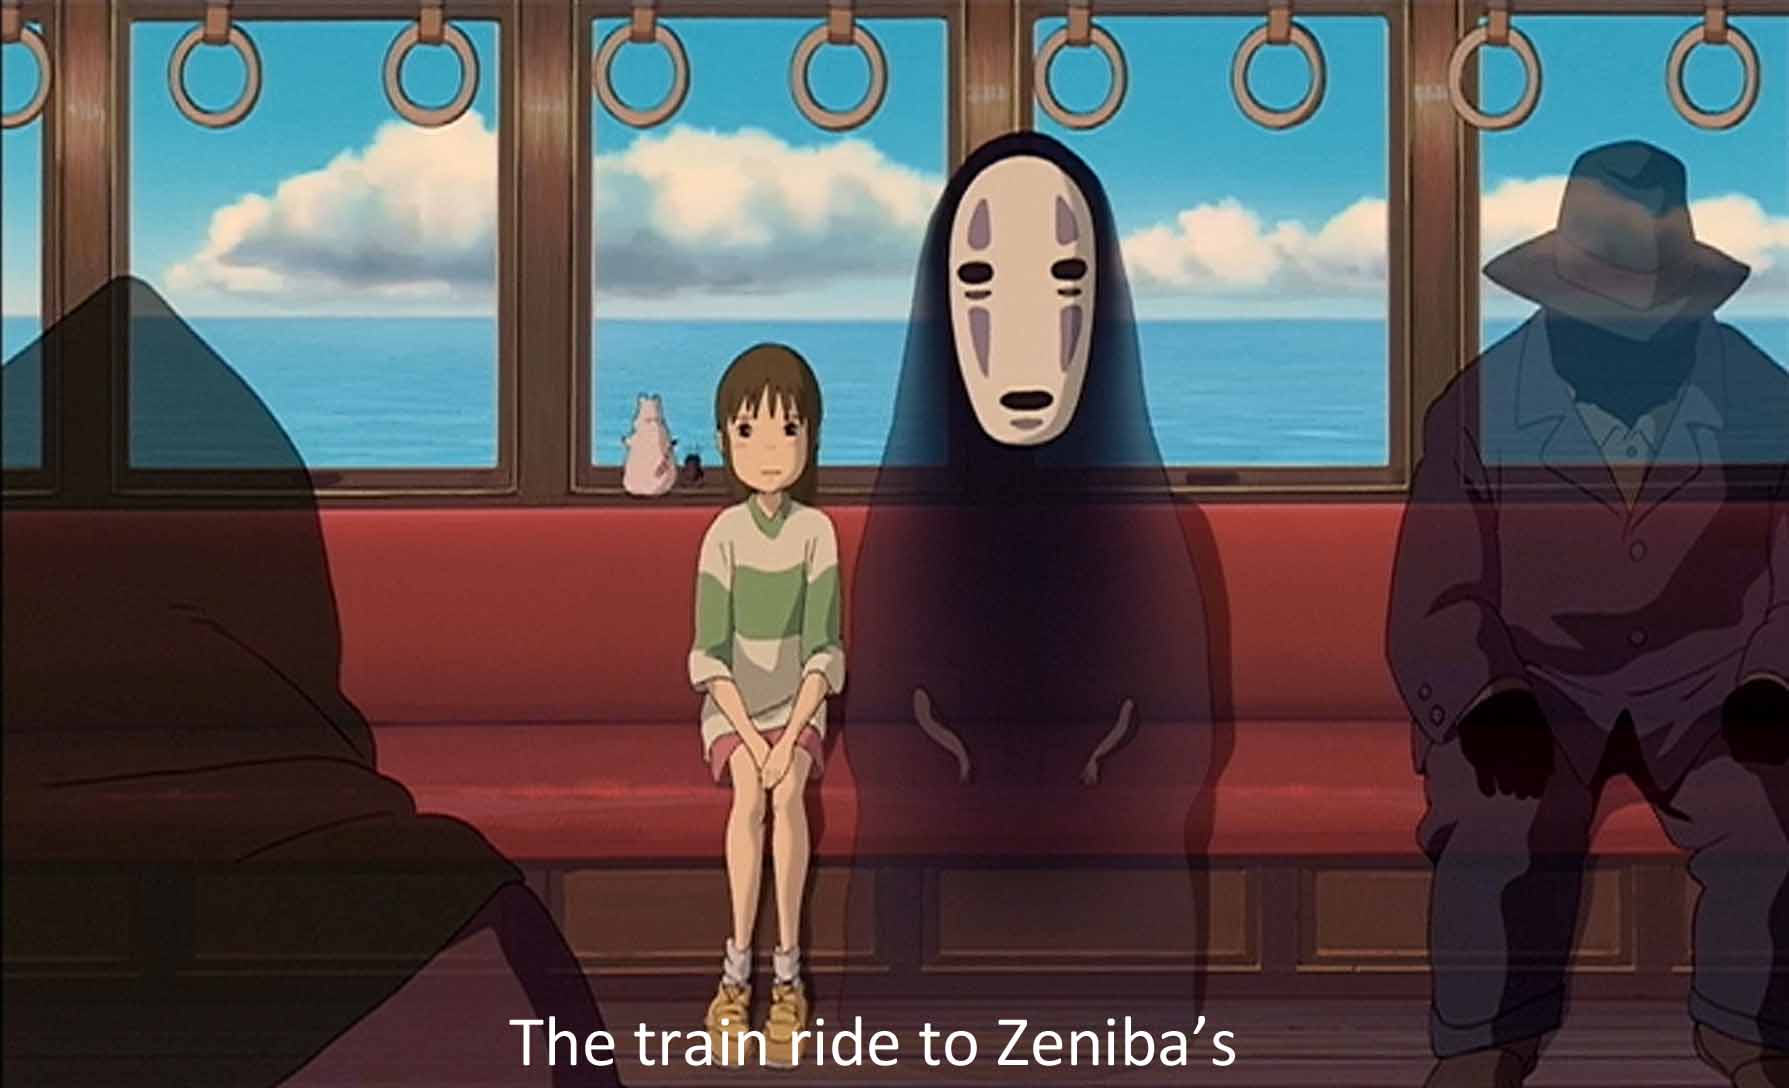 The train ride to Zeniba's